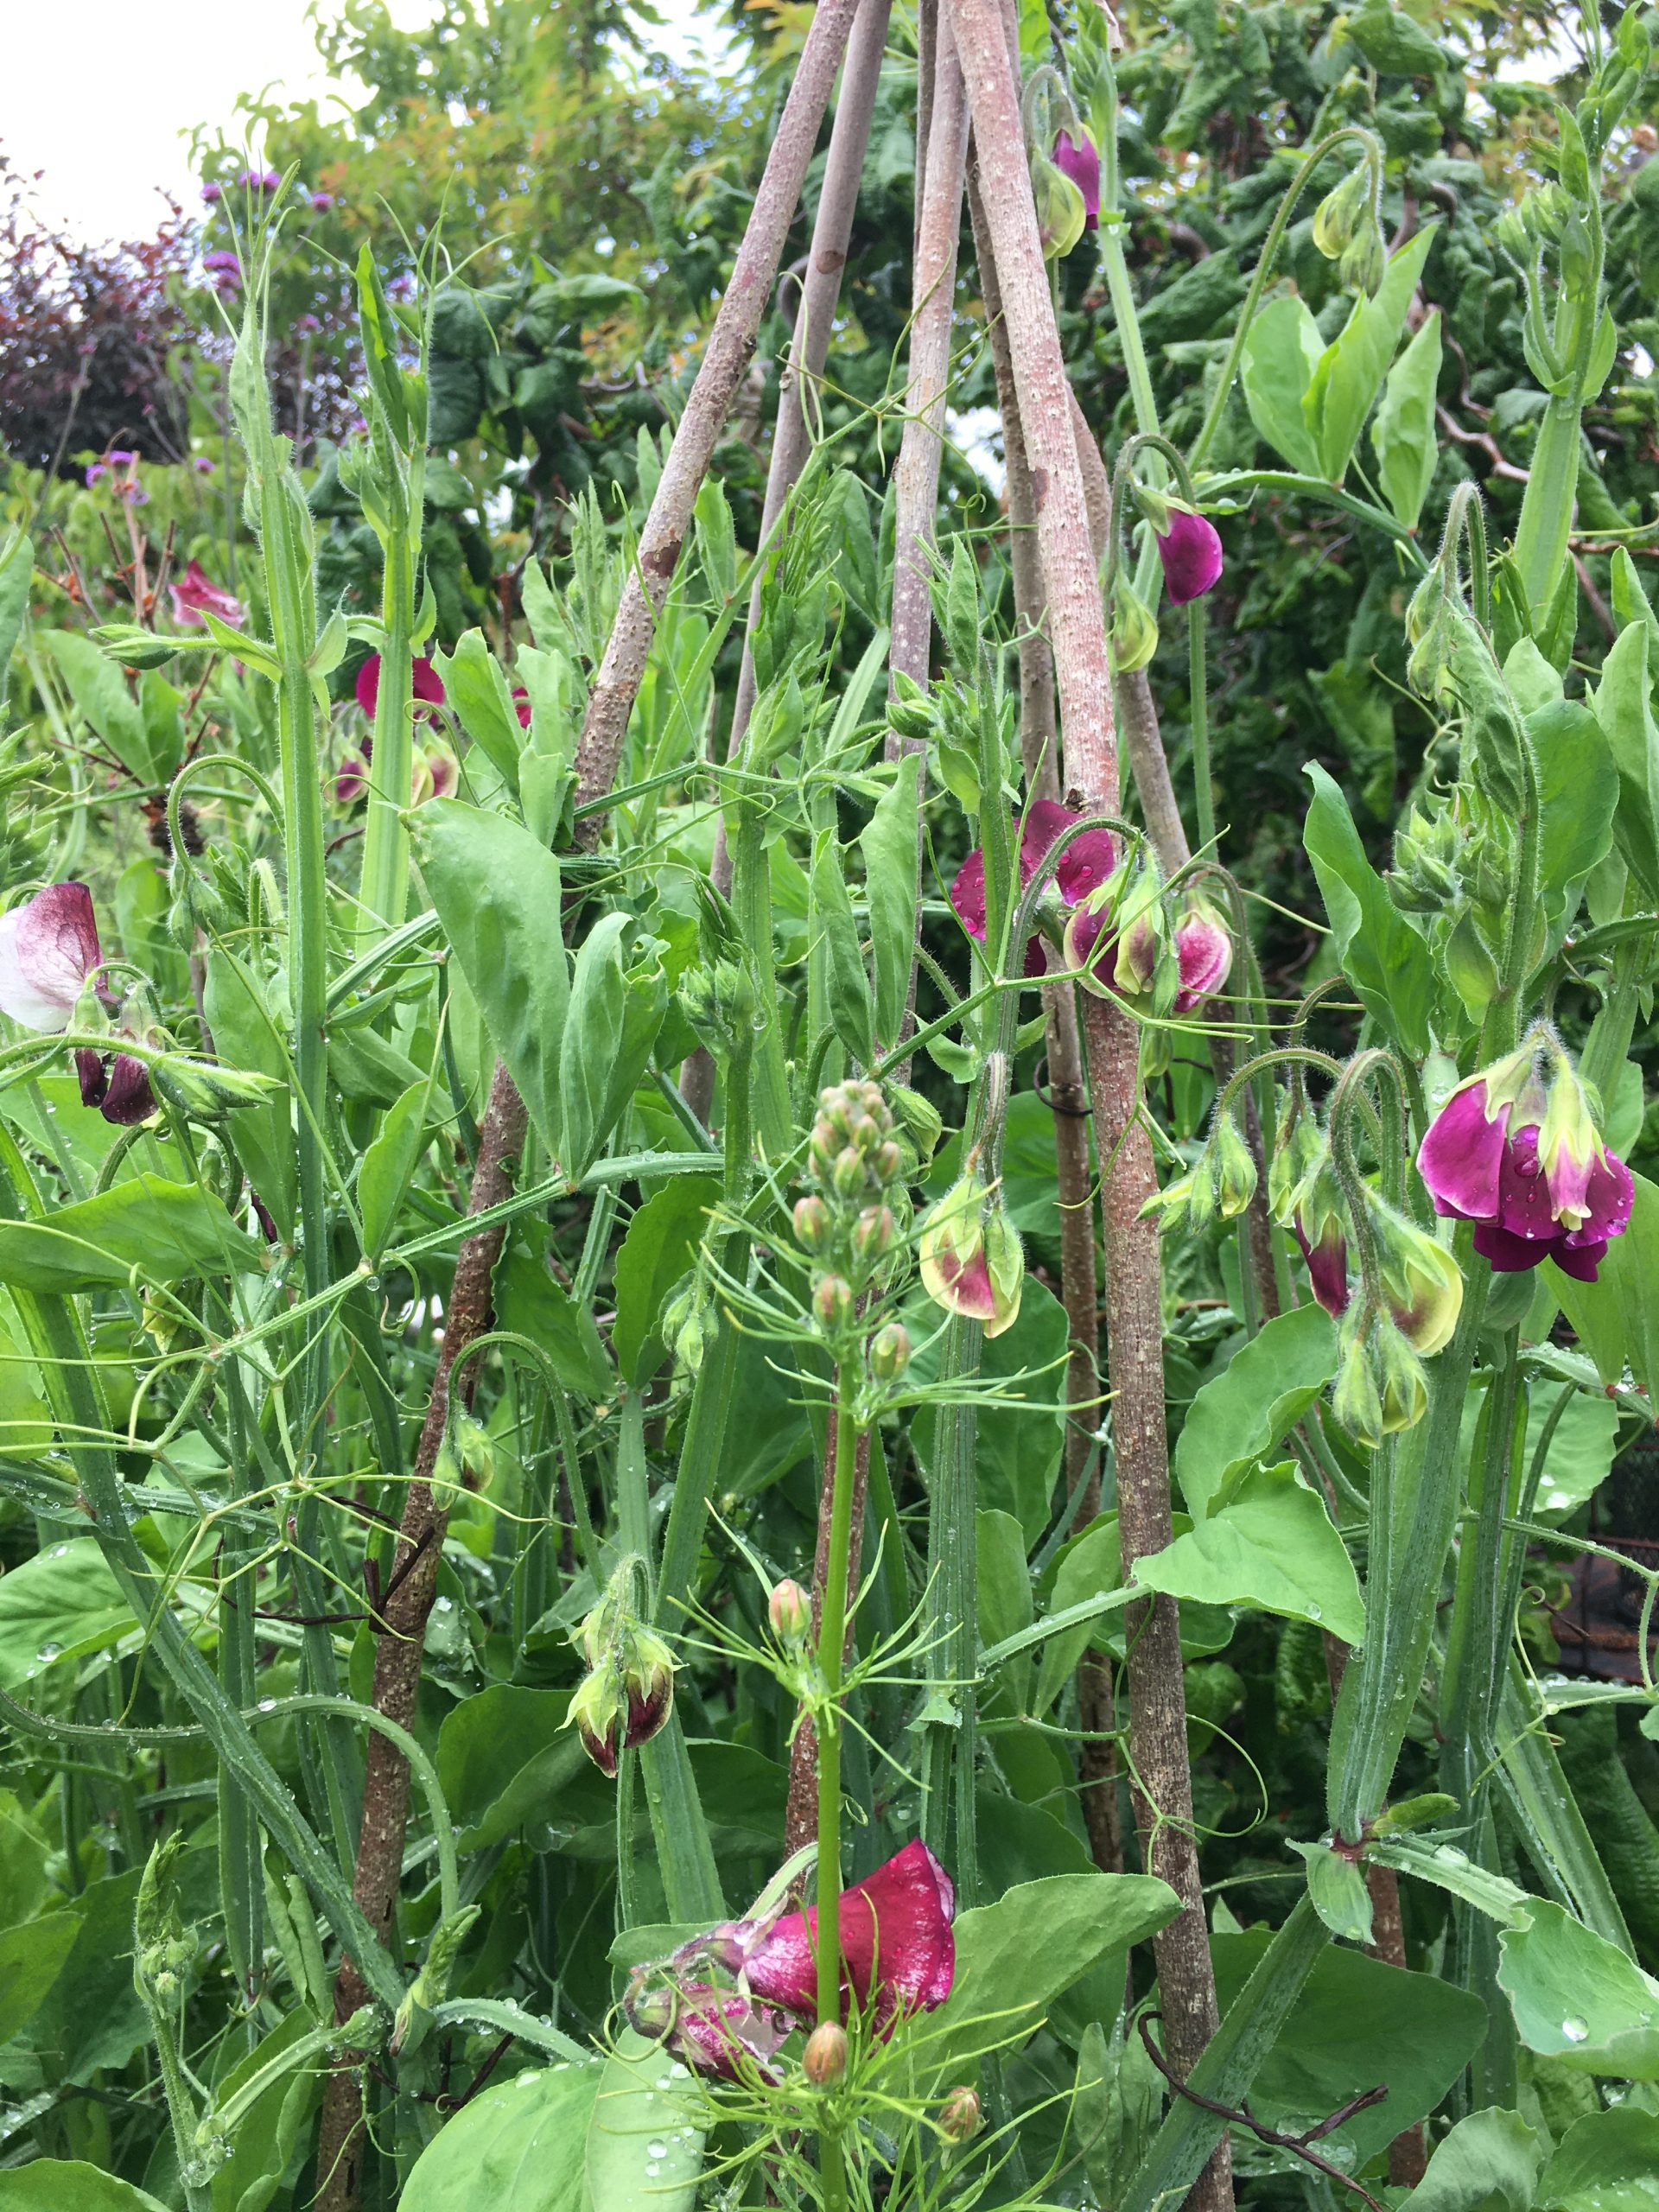 Ærteblomster lathyrus odoratus kravler op ad hasselgrene i Krukkeriet en blomstereng på krukker i haven hos SusHaveDesign